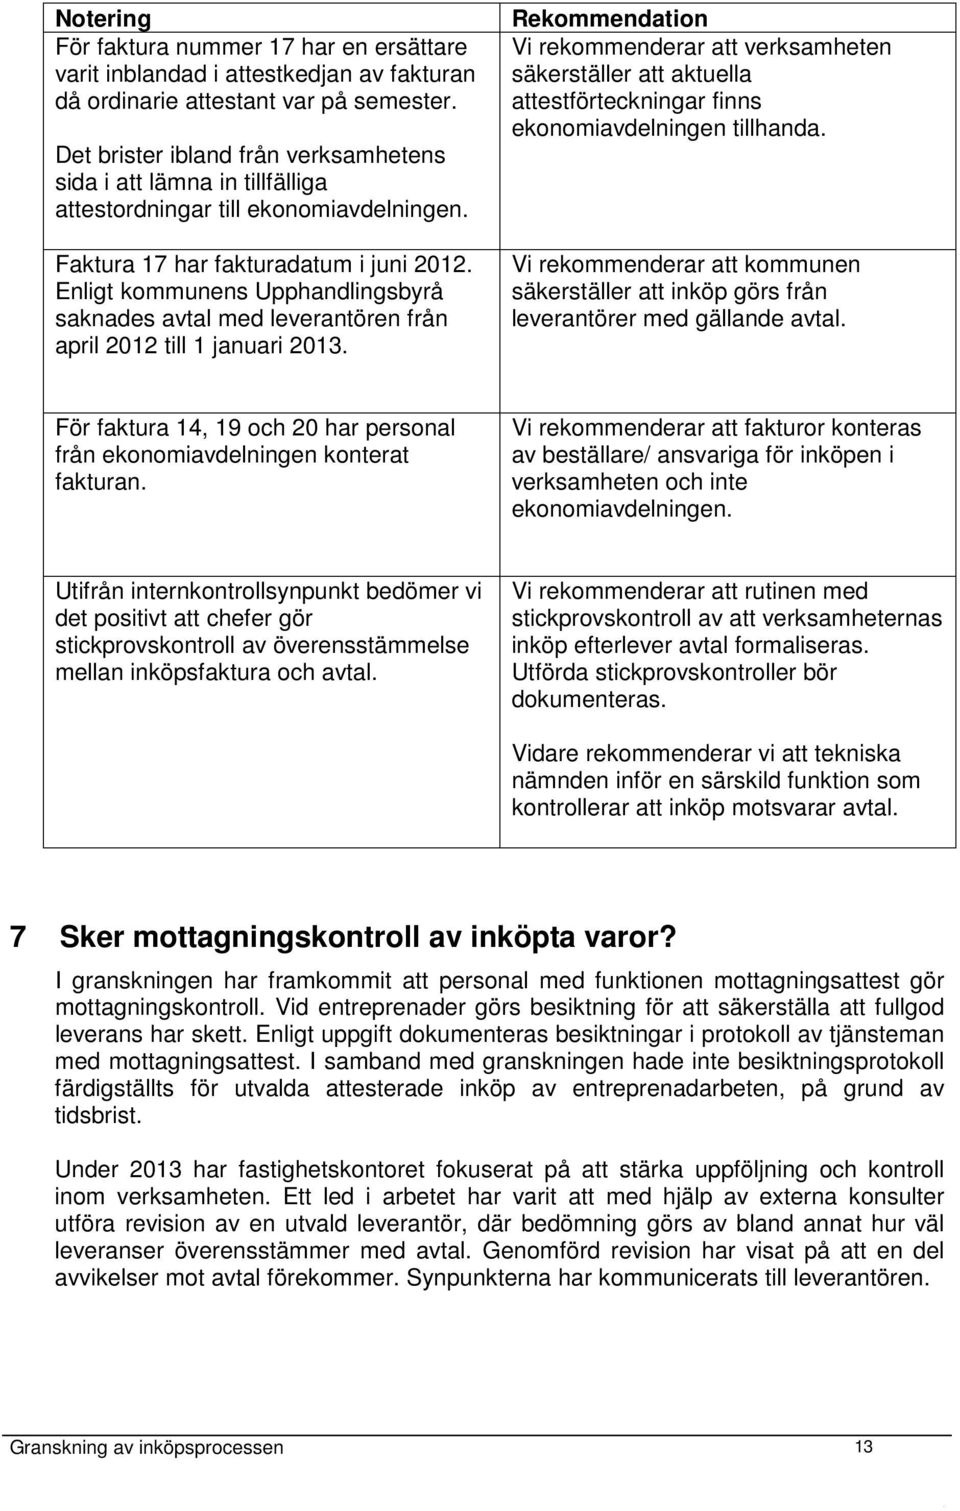 Enligt kommunens Upphandlingsbyrå saknades avtal med leverantören från april 2012 till 1 januari 2013.